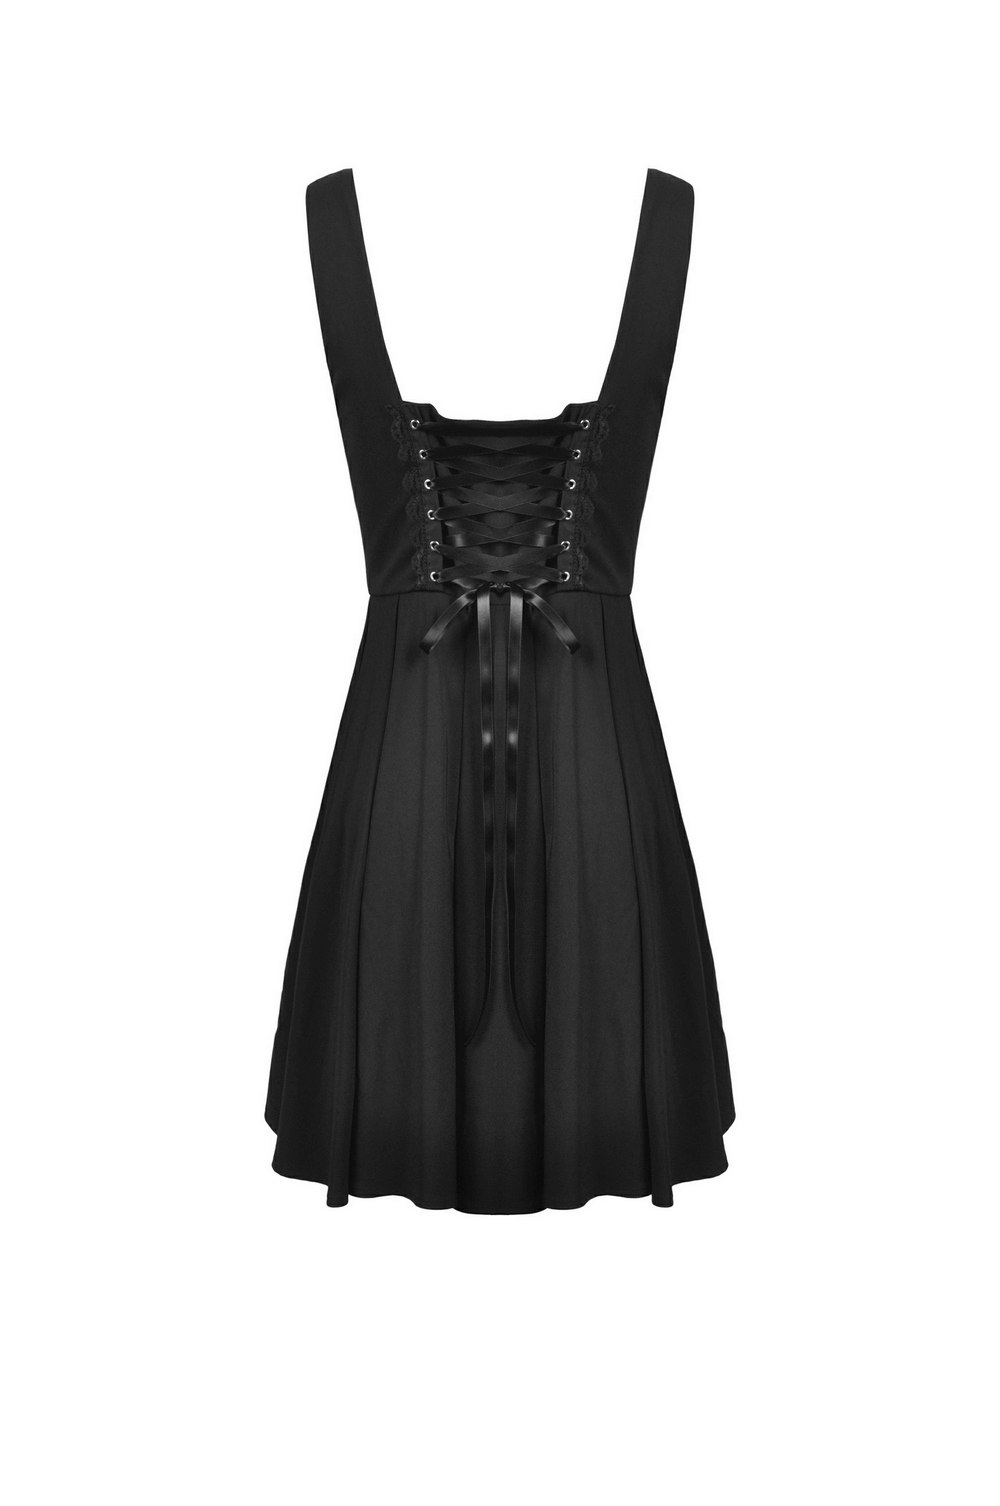 Elegant Women's Black Dress with Unique Belt Detail